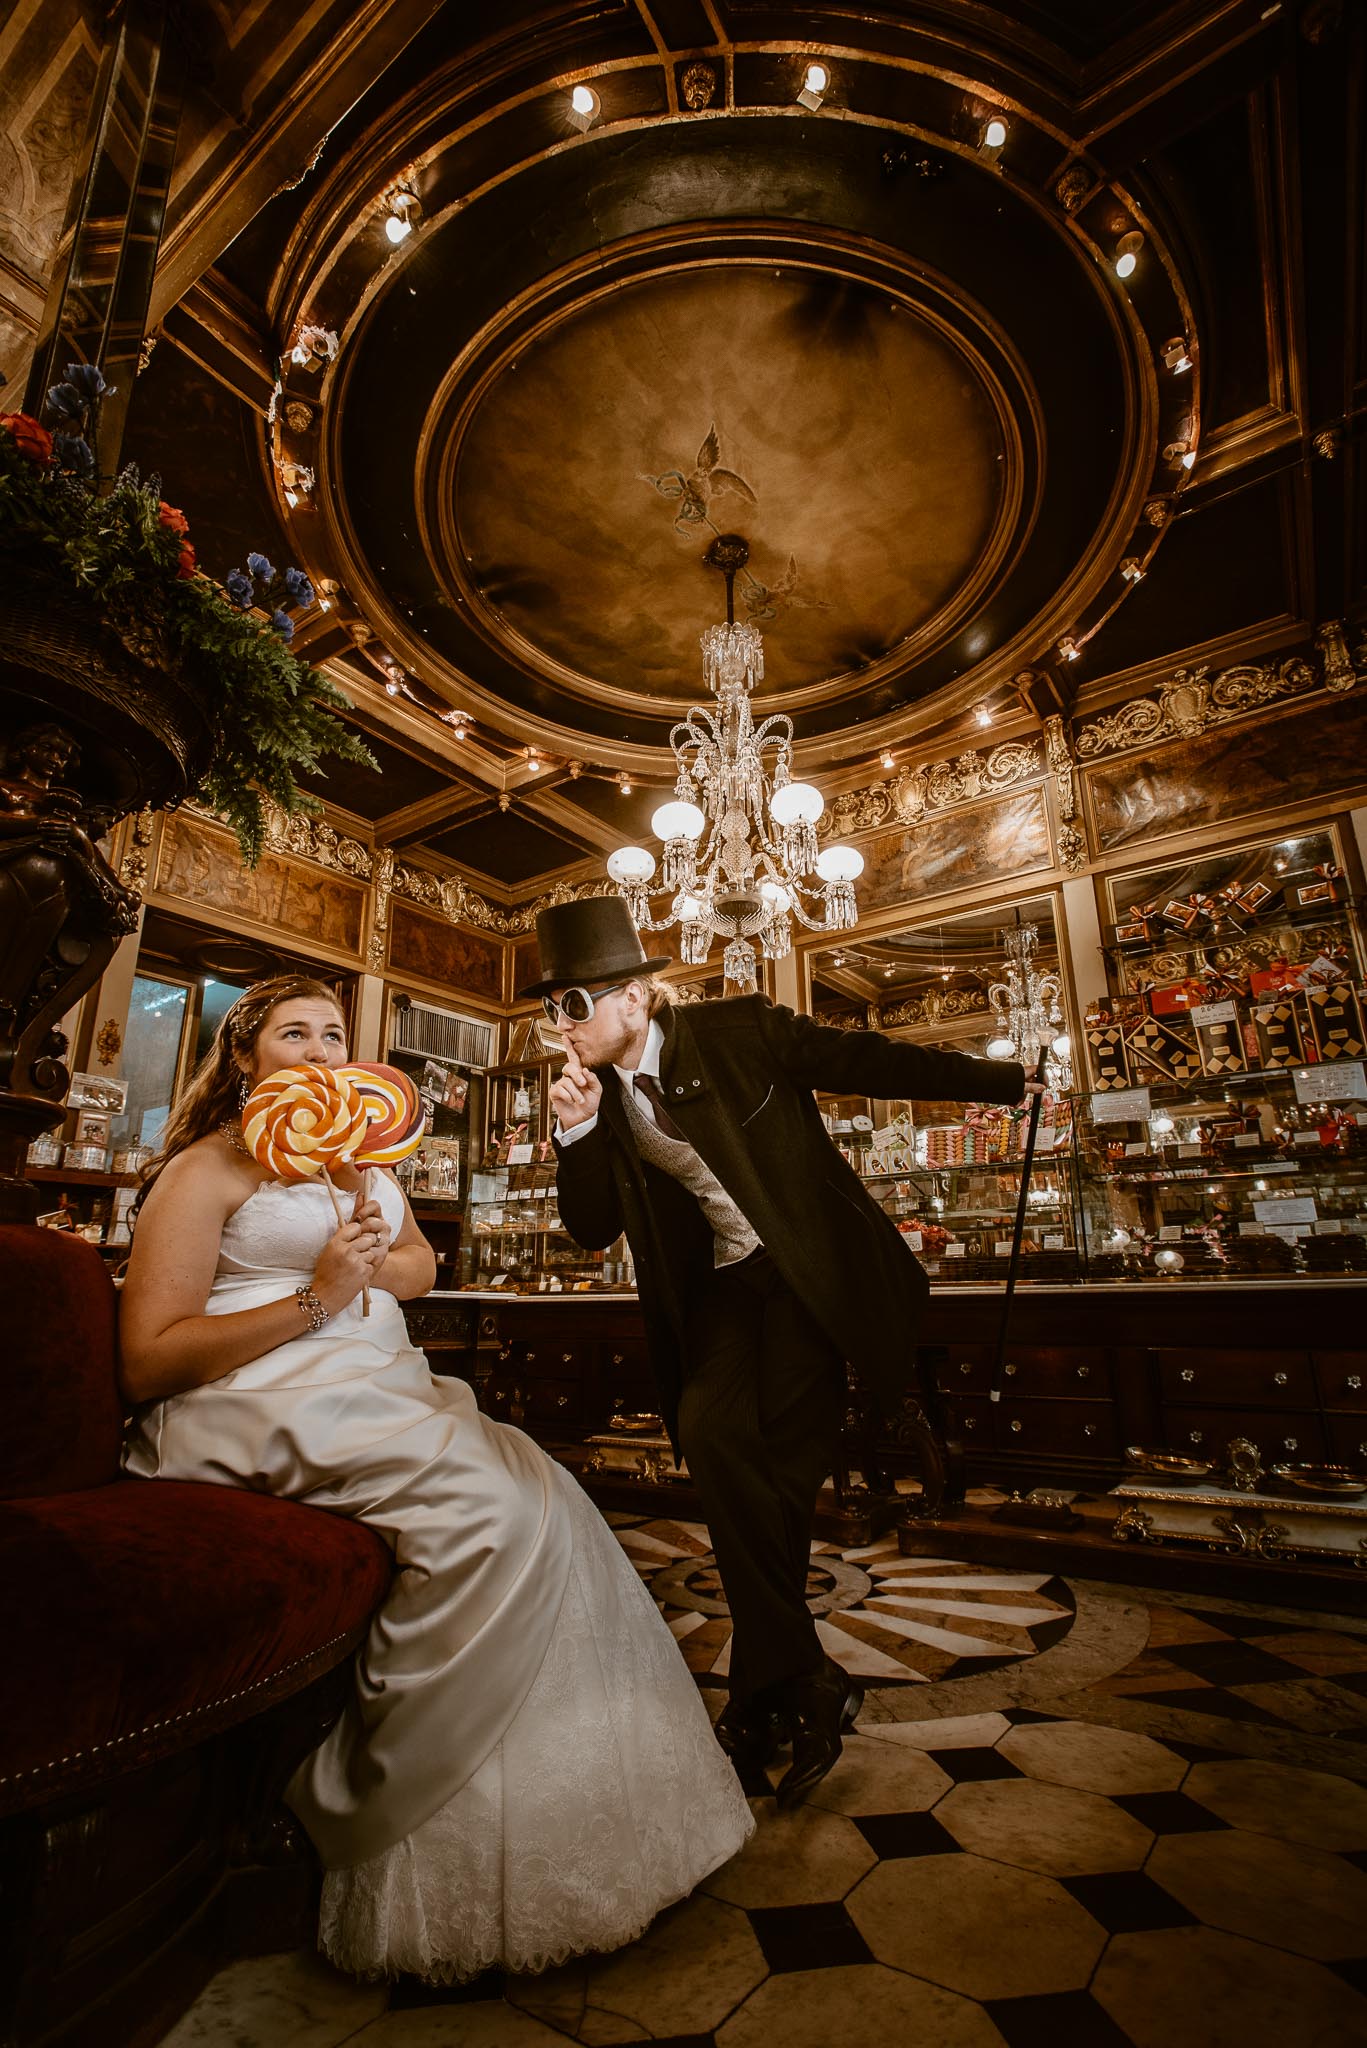 Séance couple après mariage inspirée de Charlie et la Chocolaterie de Tim Burton chez Debotté à Nantes par Geoffrey Arnoldy photographe